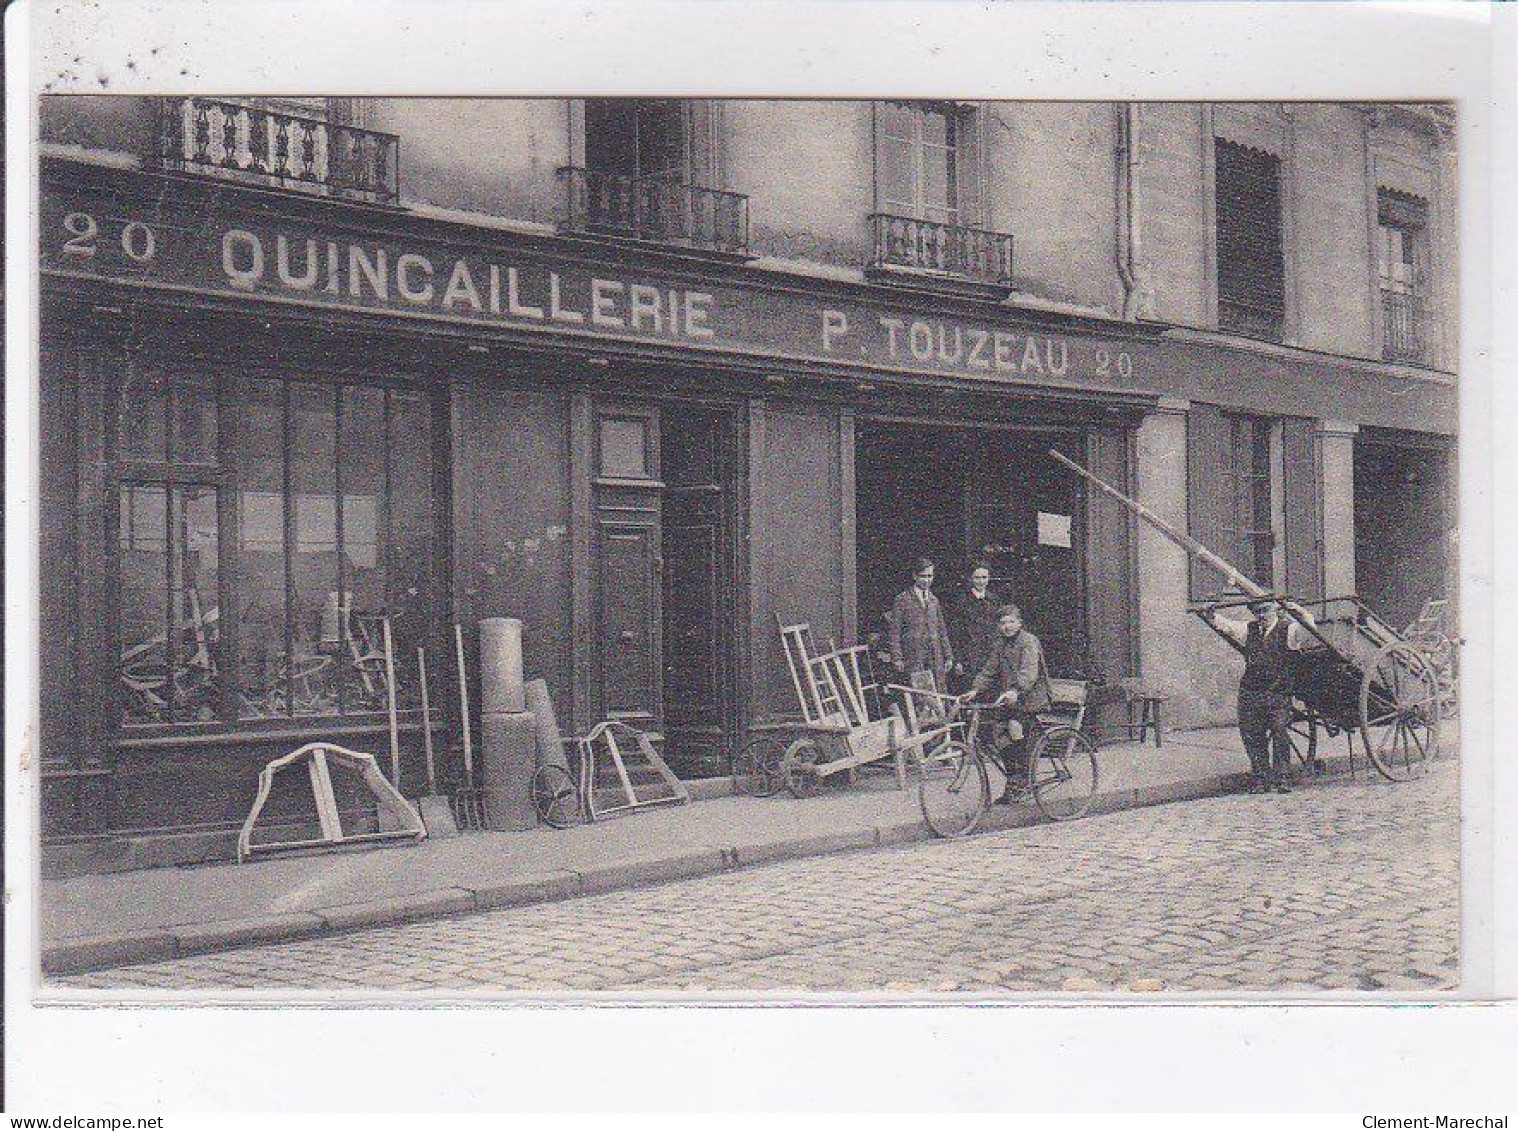 NANTES: Quincaillerie, P. Touzeau - Très Bon état - Nantes